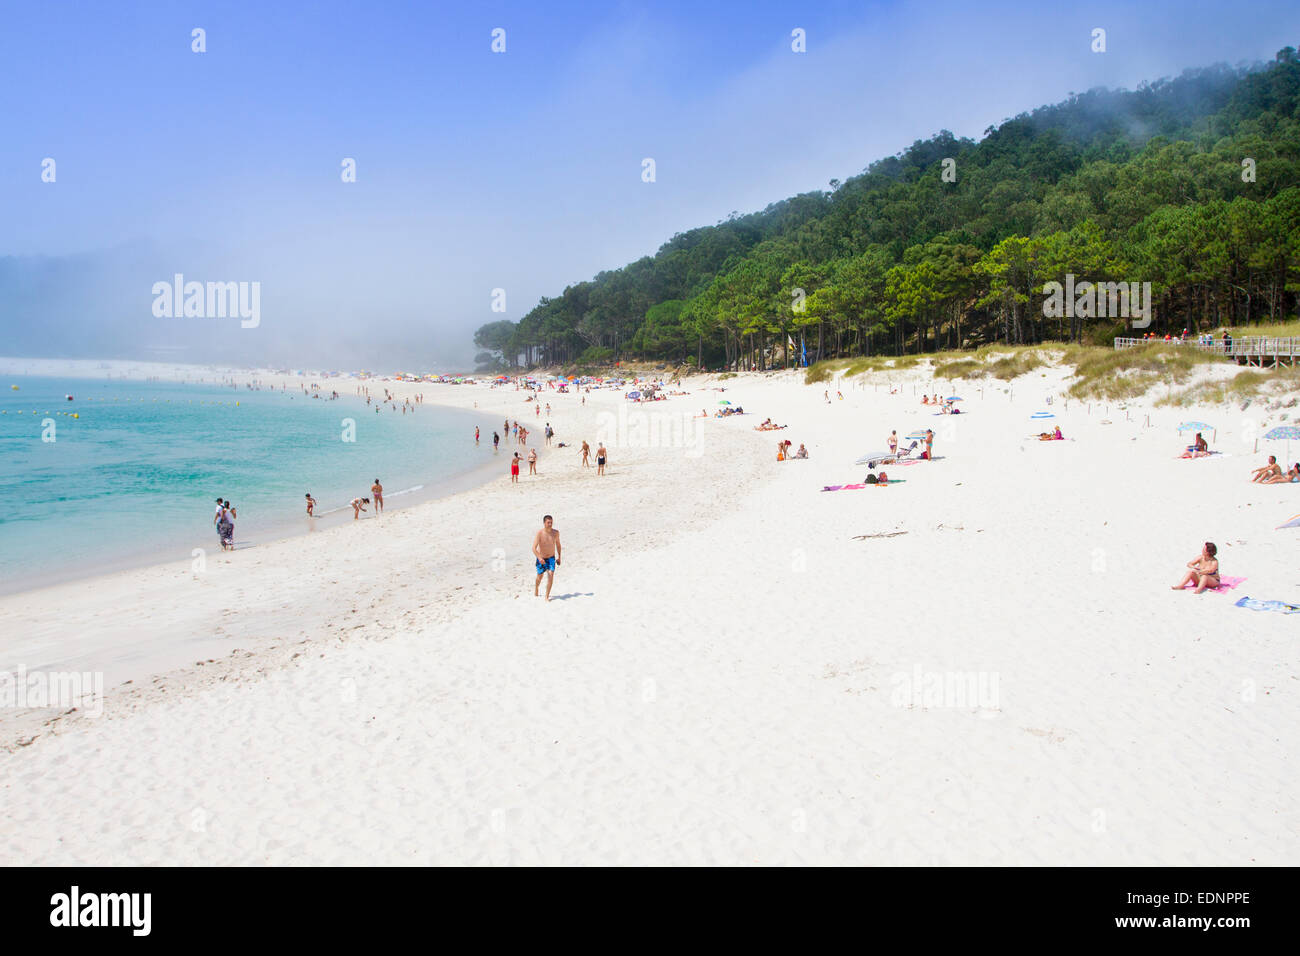 Rodas beach, Cies Islands, Vigo, Pontevedra, Galicia, Spain Stock Photo